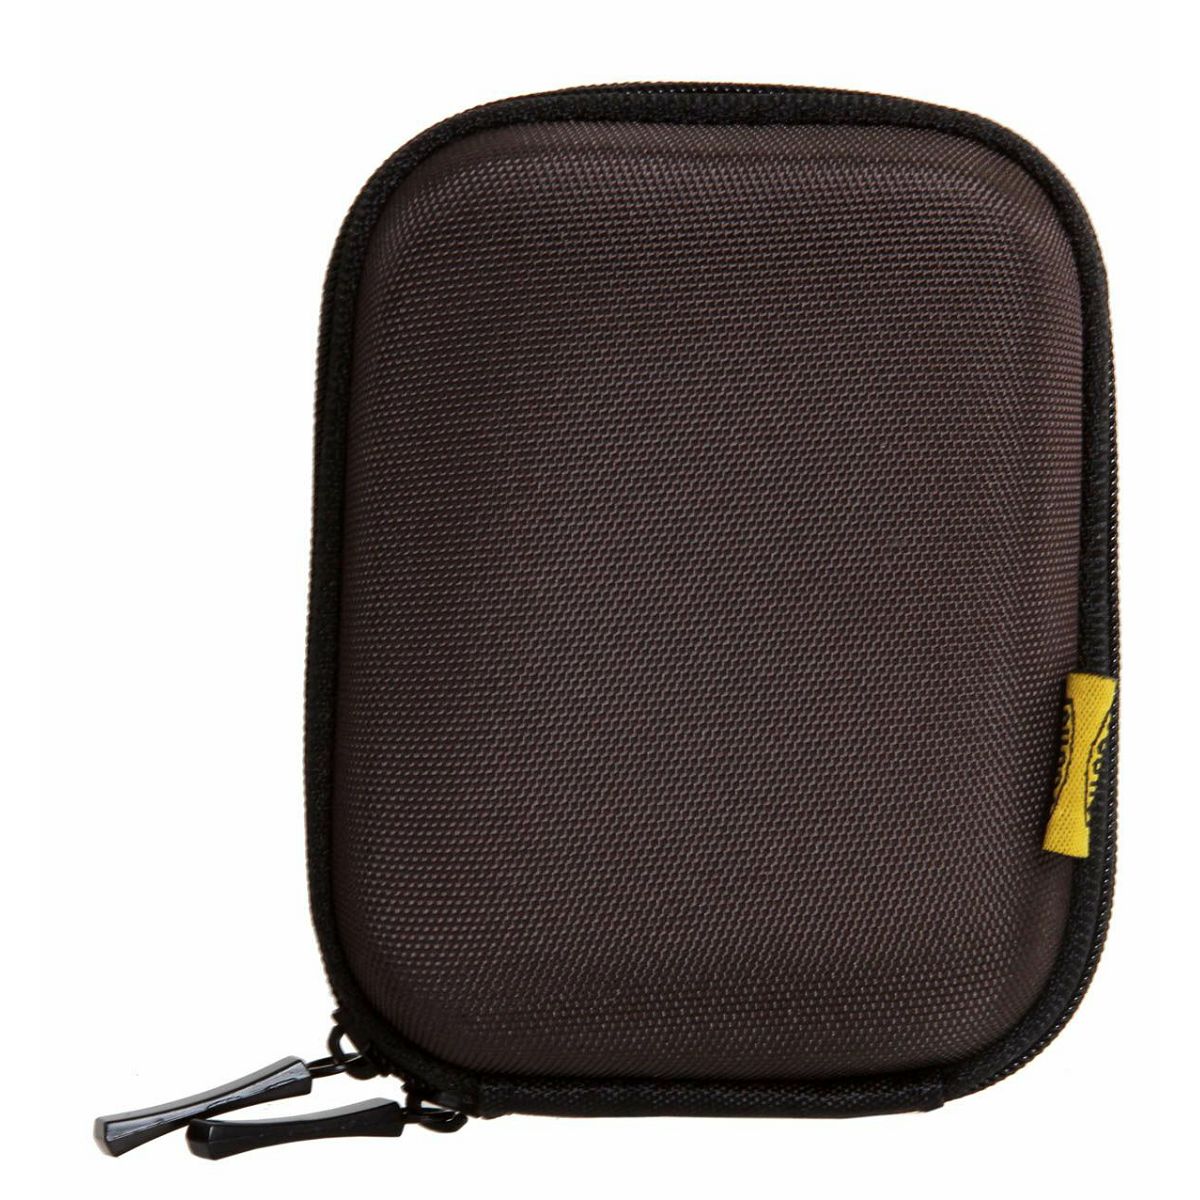 Bilora Shell Bag IV Chocolate (363-24) torbica futrola za kompaktni fotoaparat